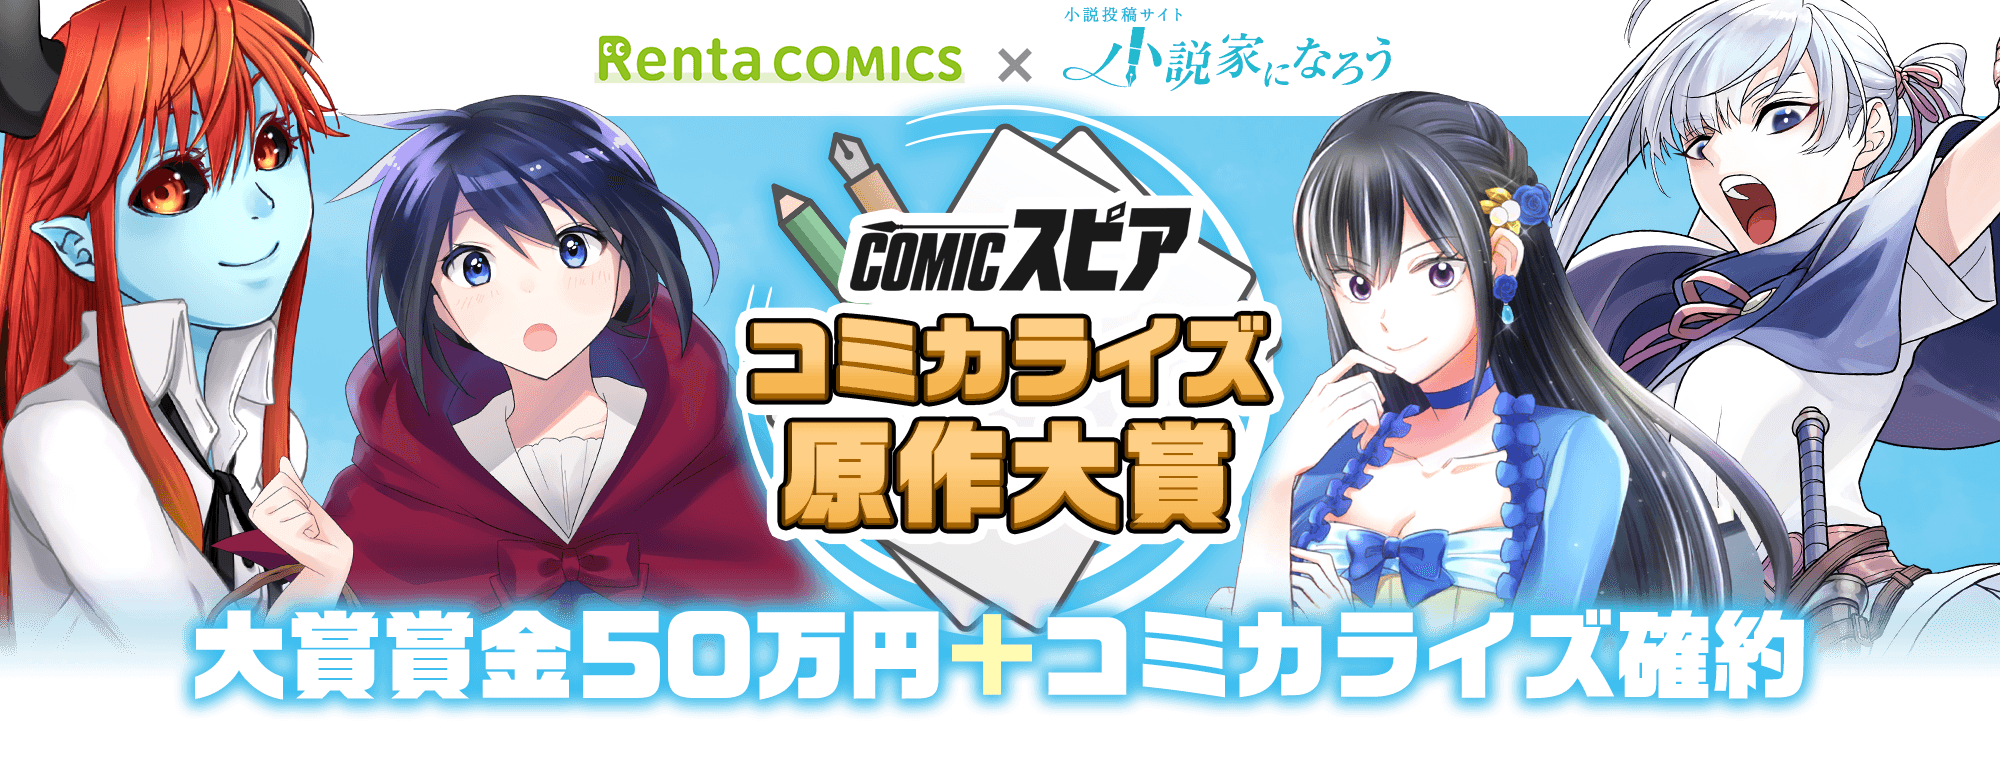 Rentaコミックス 小説家になろう オリジナルレーベル Comicスピア コミカライズ原作コンテストを開始